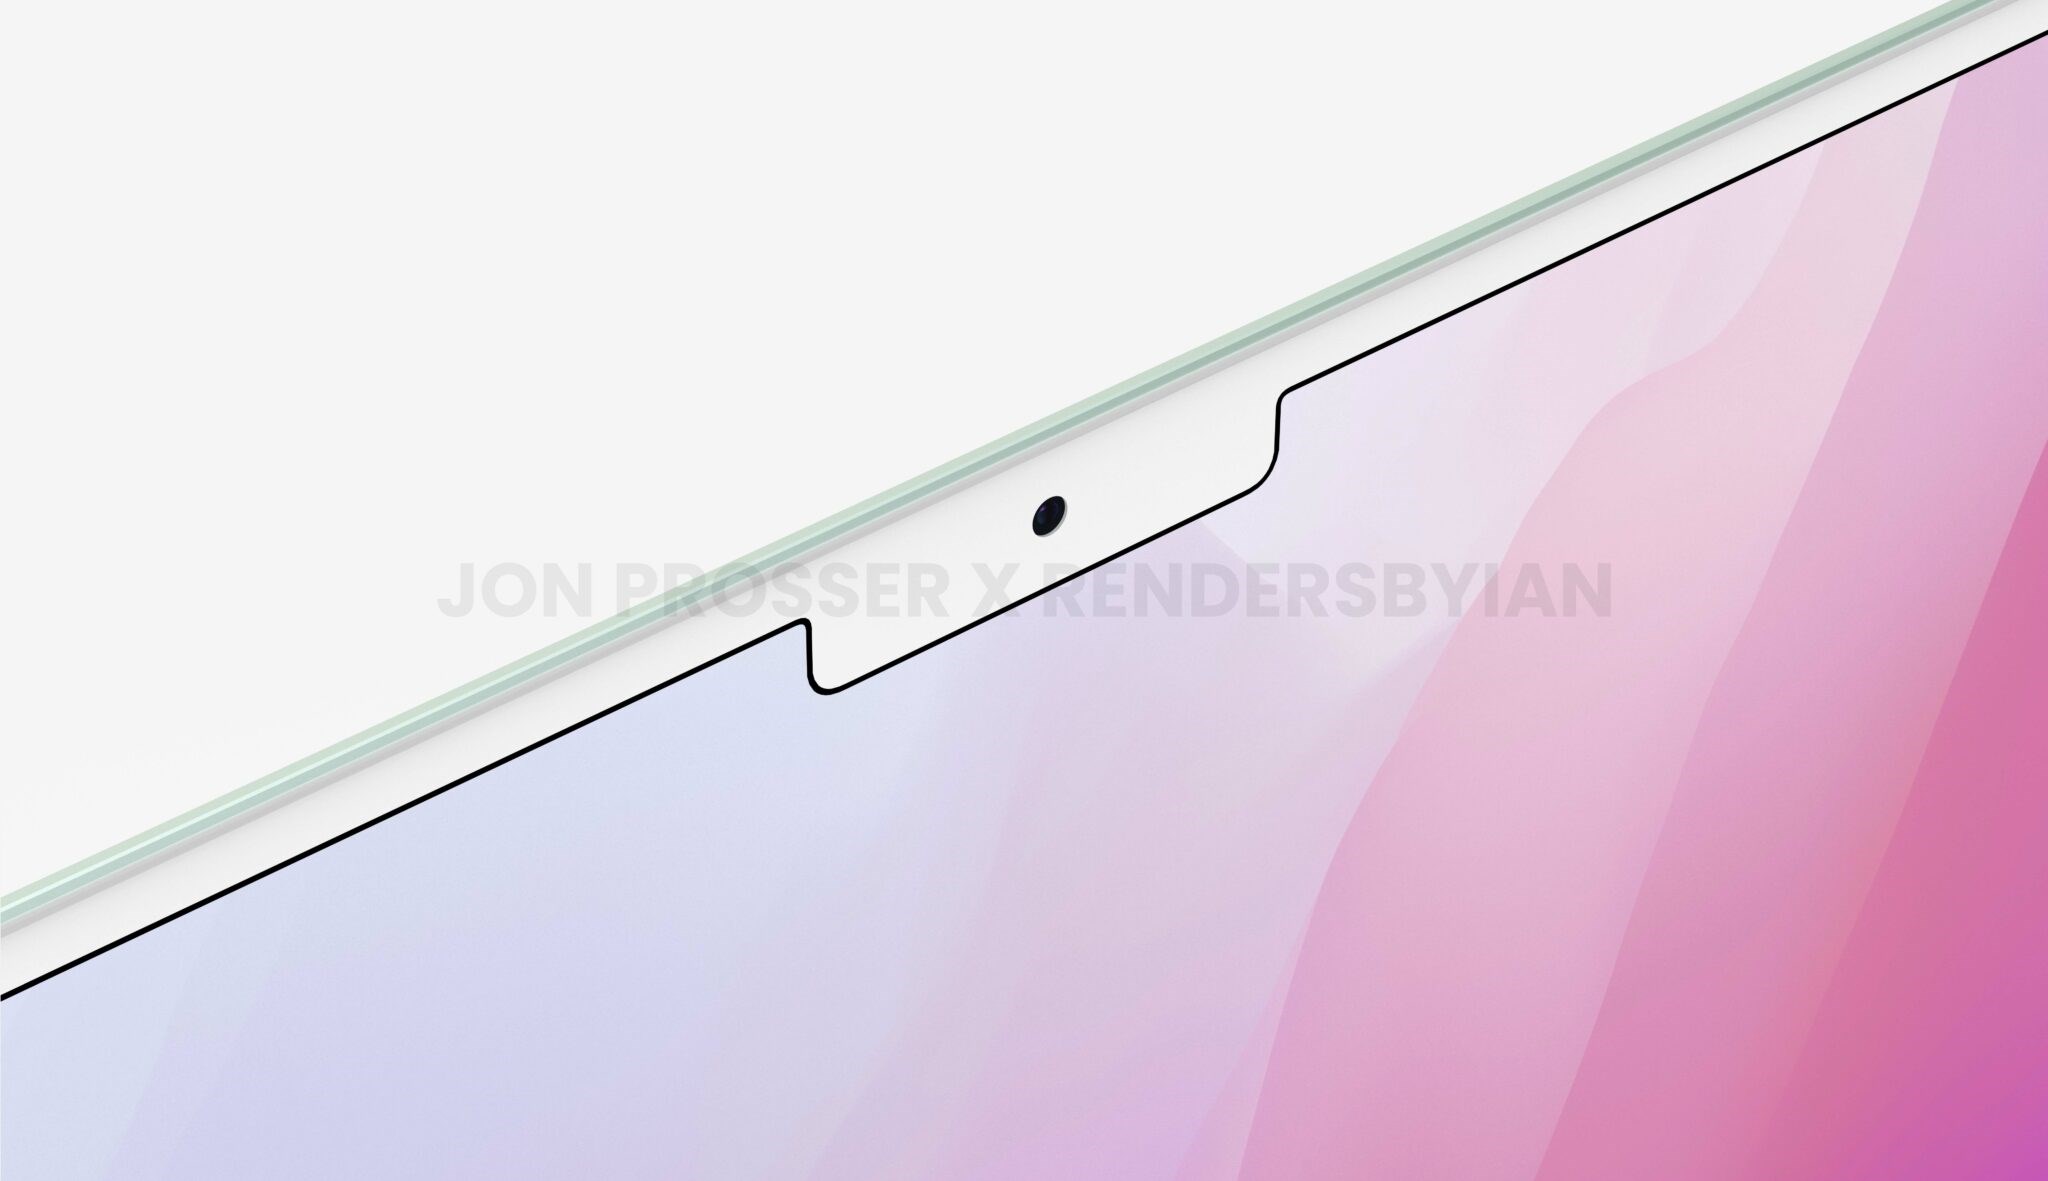 Yeni MacBook Air'ın render görüntüleri yayınlandı